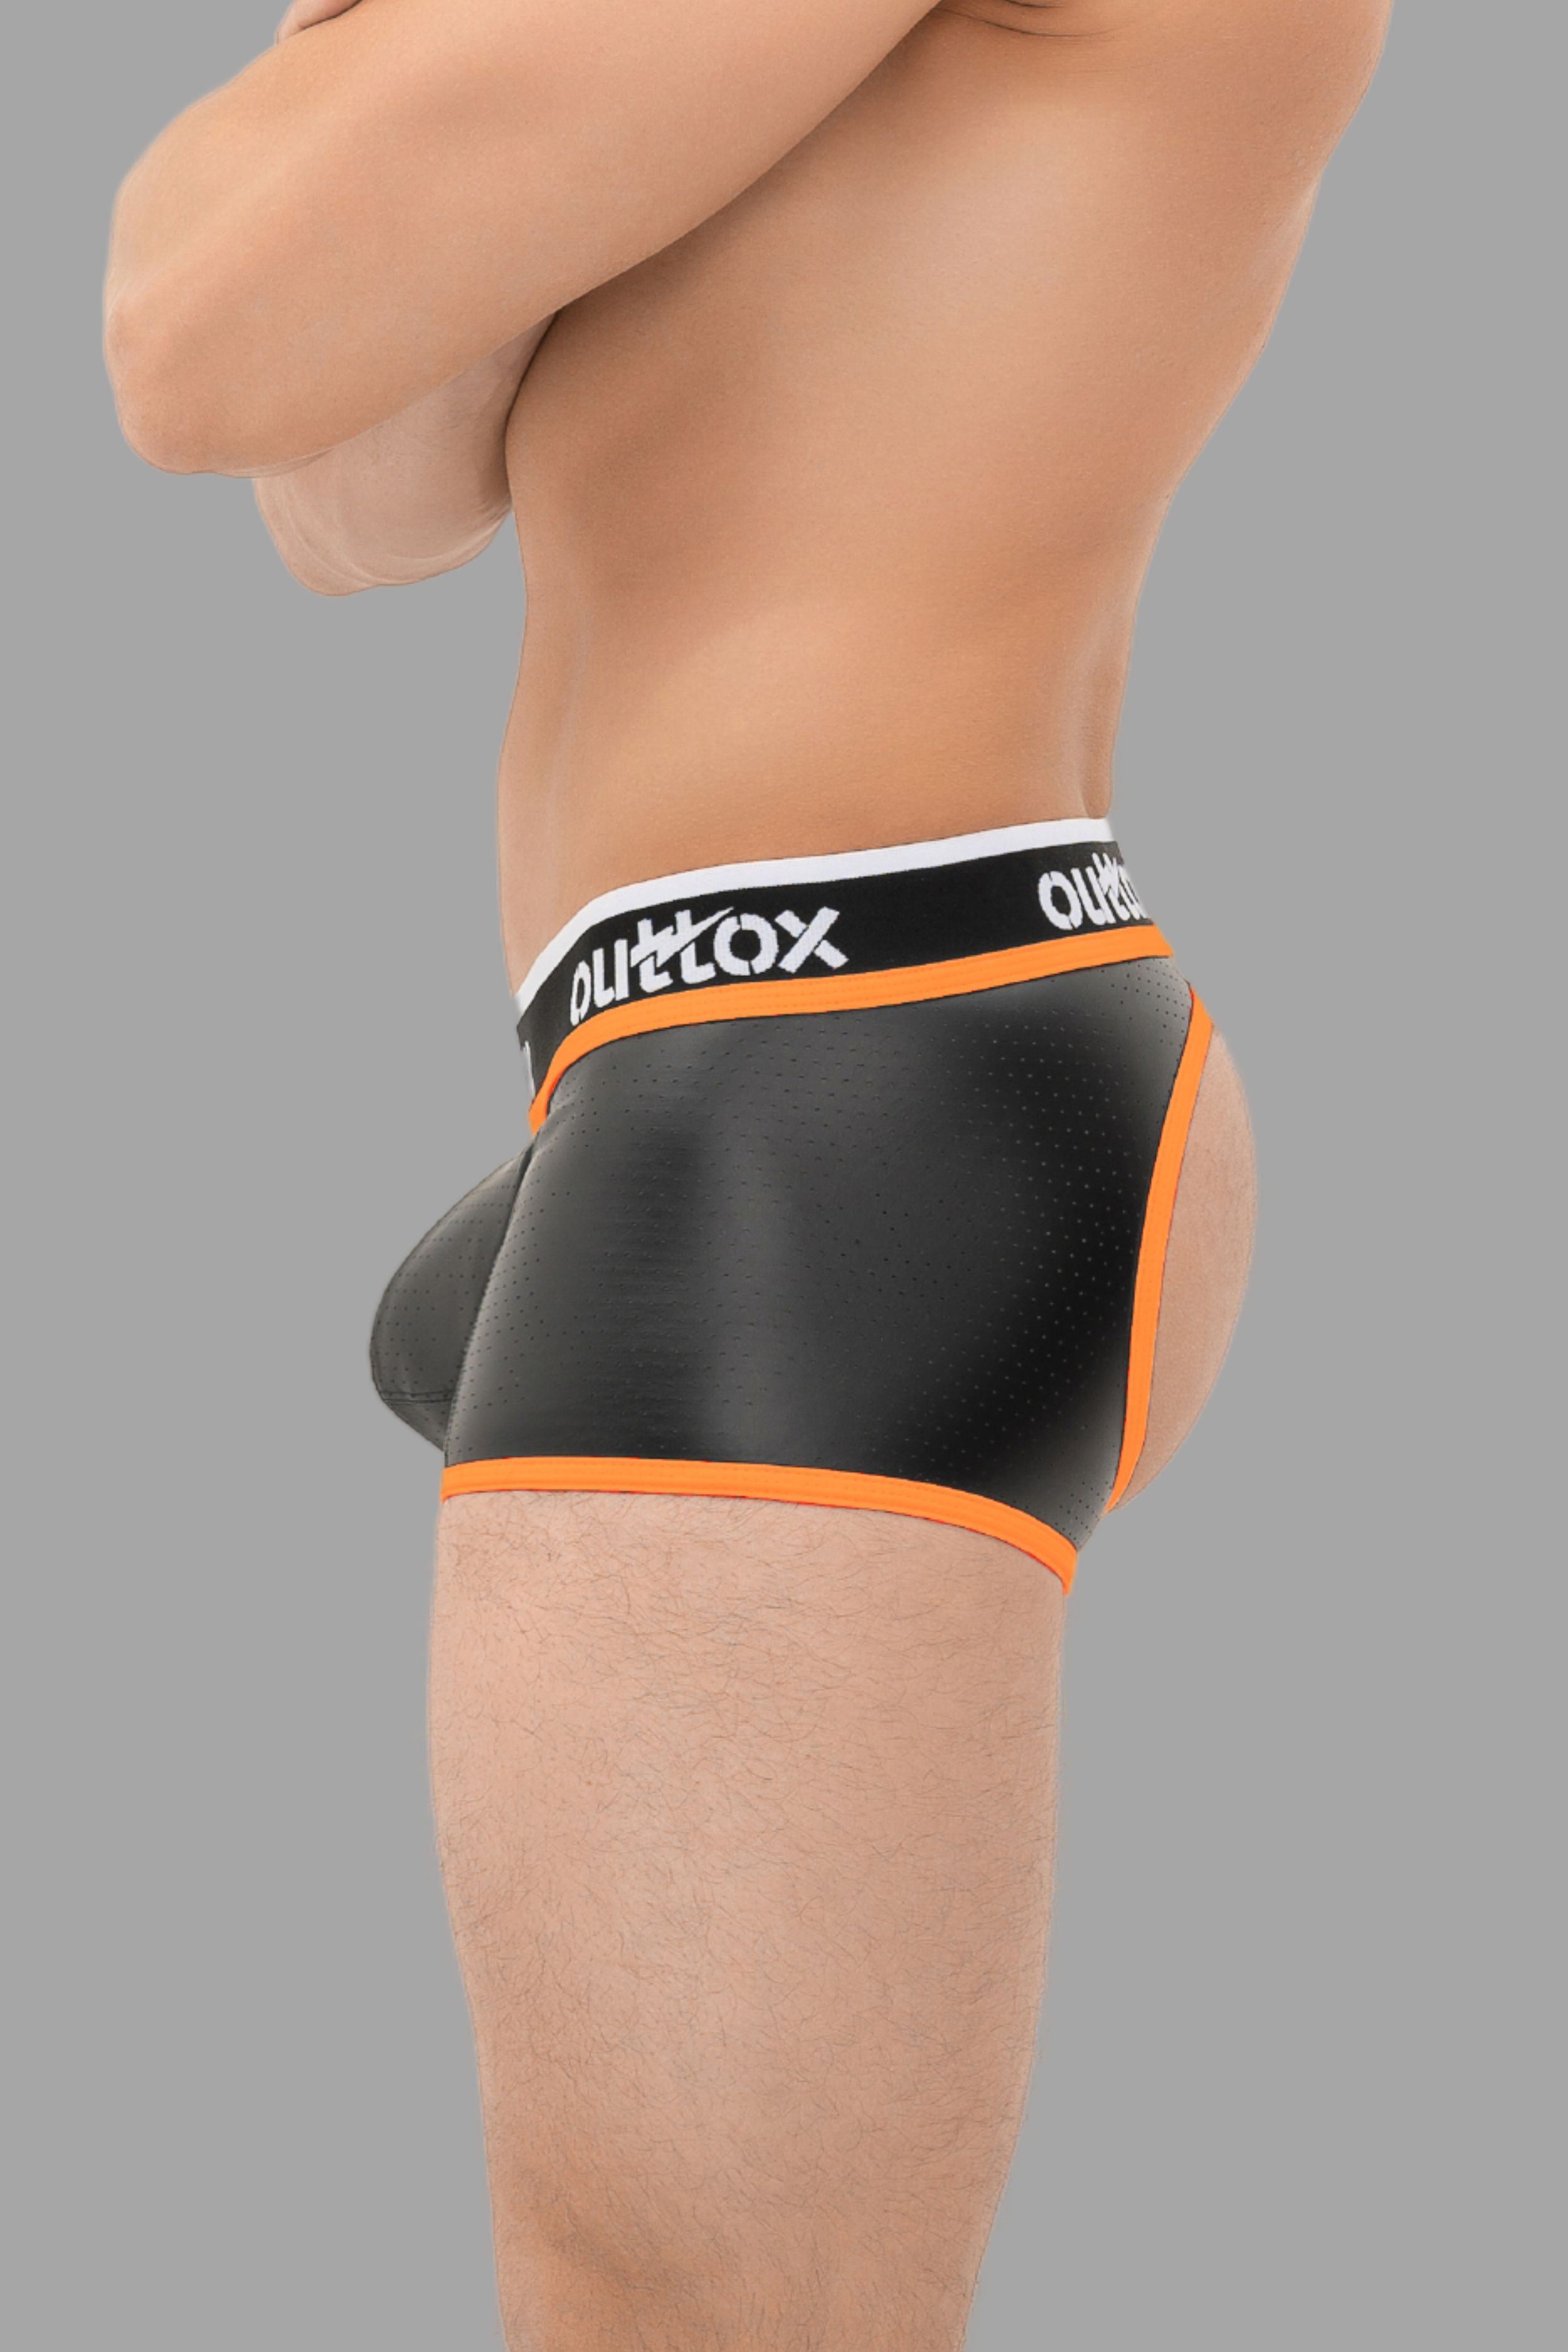 Outtox. Short de coffre arrière ouvert avec pièce à pression. Noir + Orange